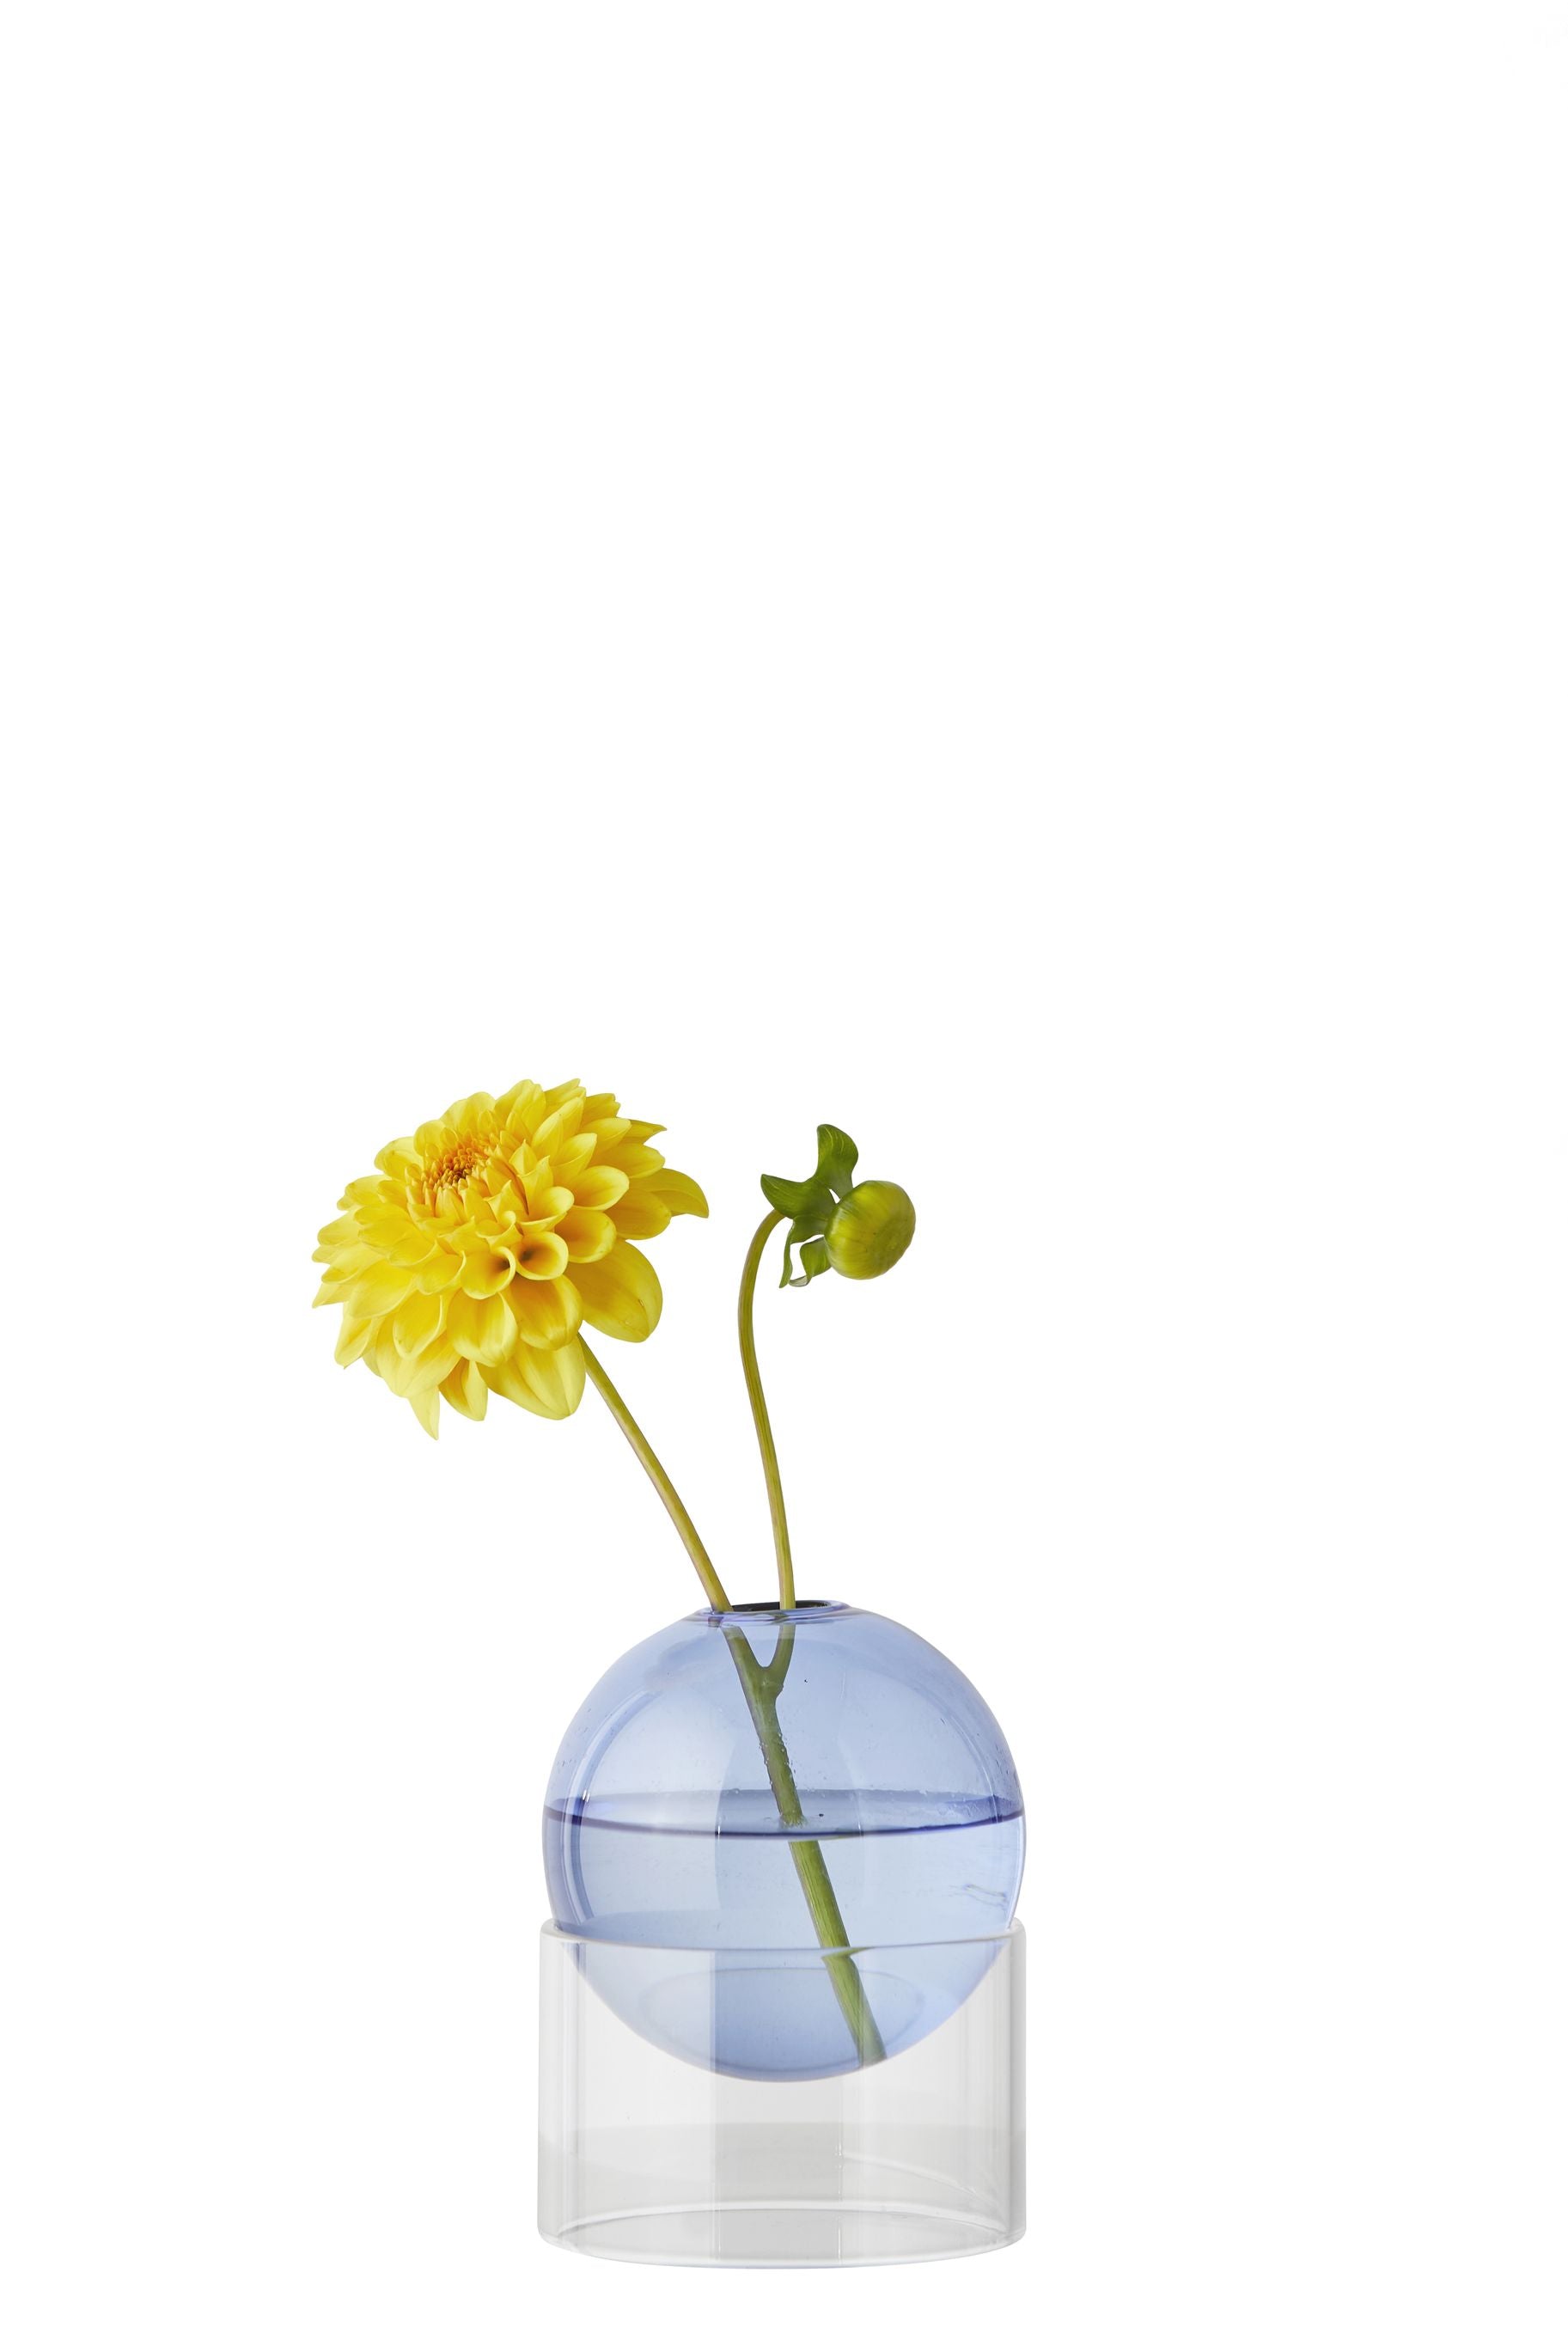 Studio sur le vase à bulles de fleur debout 10 cm, bleu